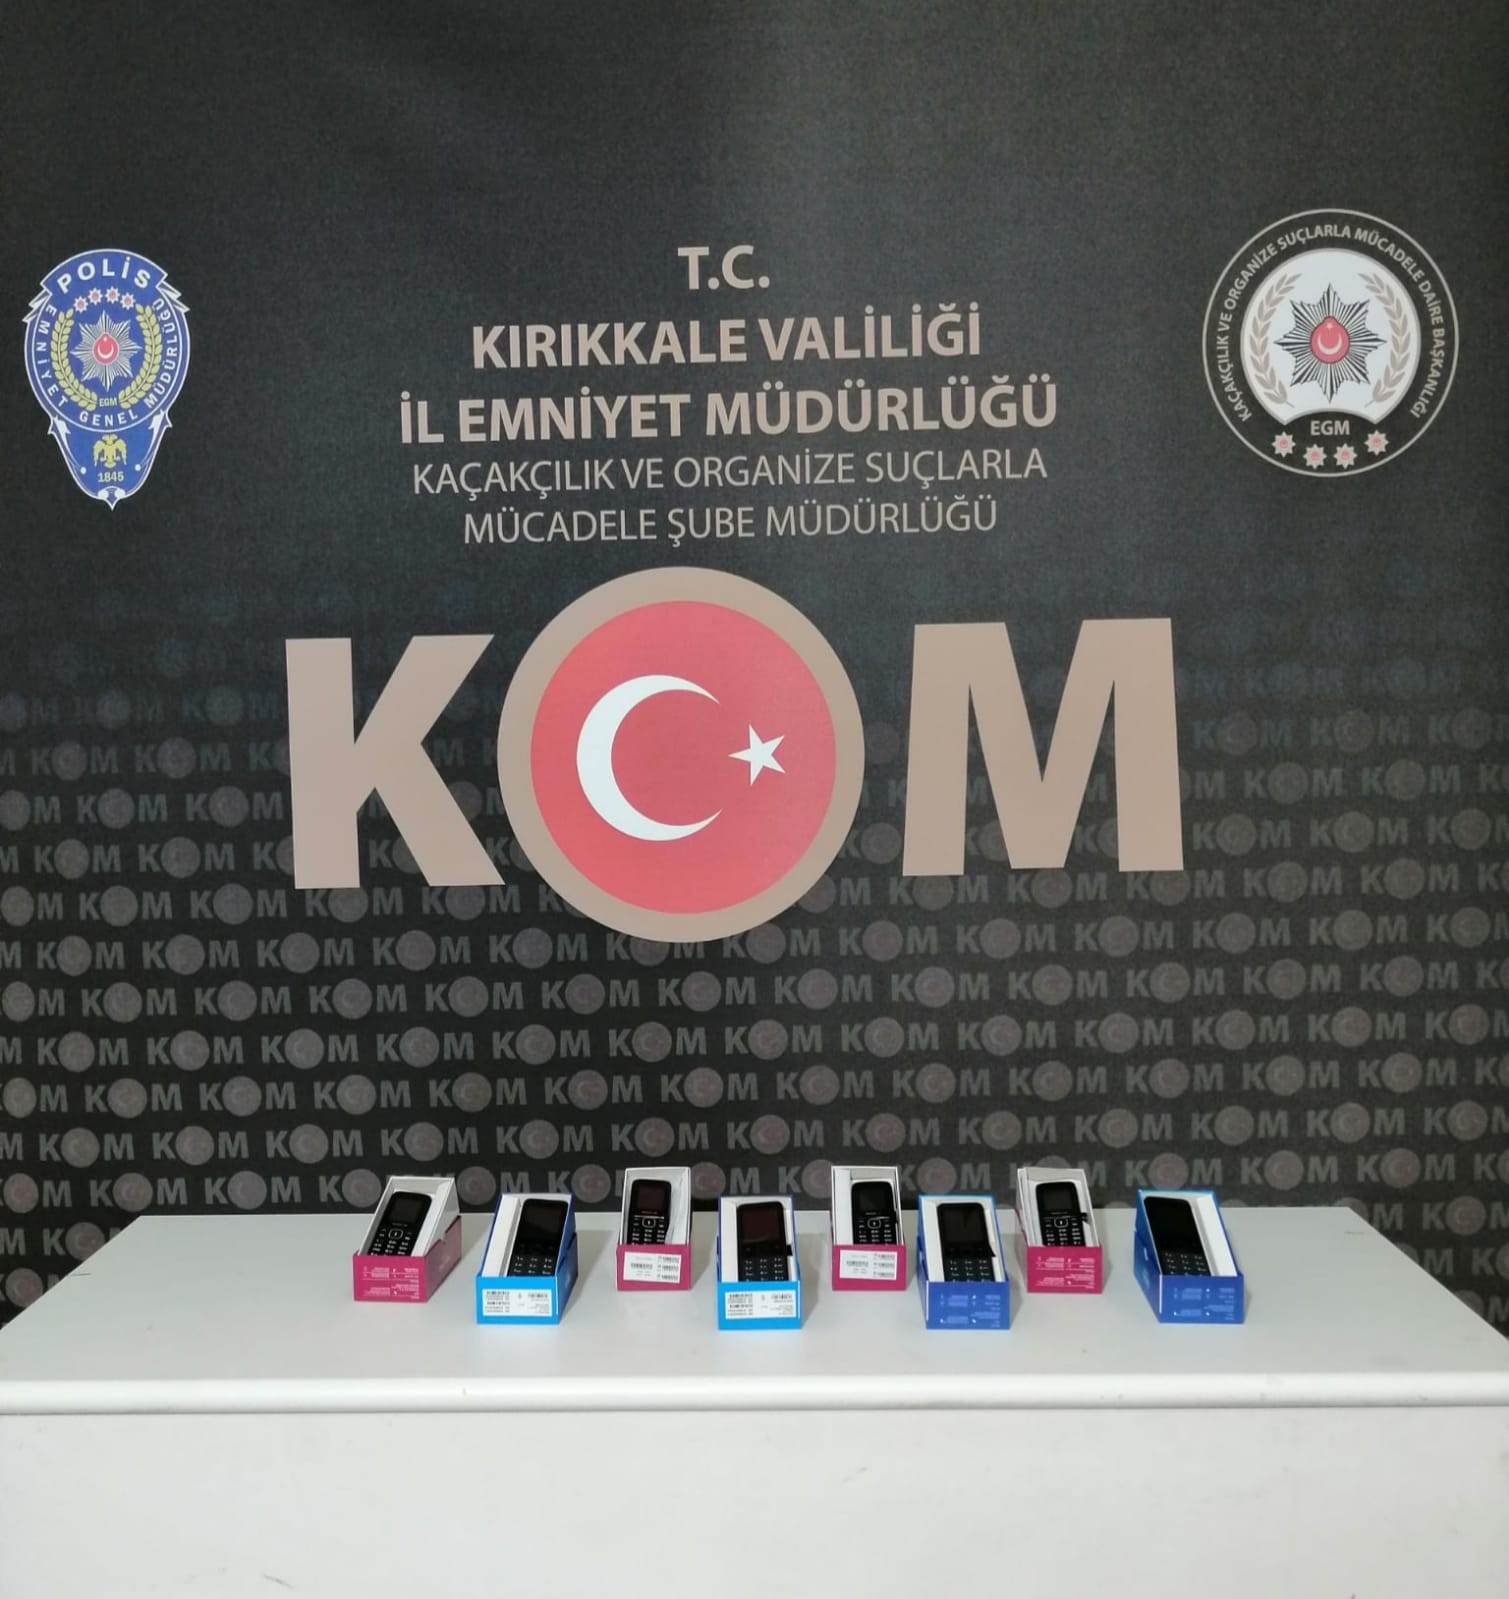 6194f402108df-Kırıkkale’de 8 adet kaçak cep telefonu ele geçirildi.jpg